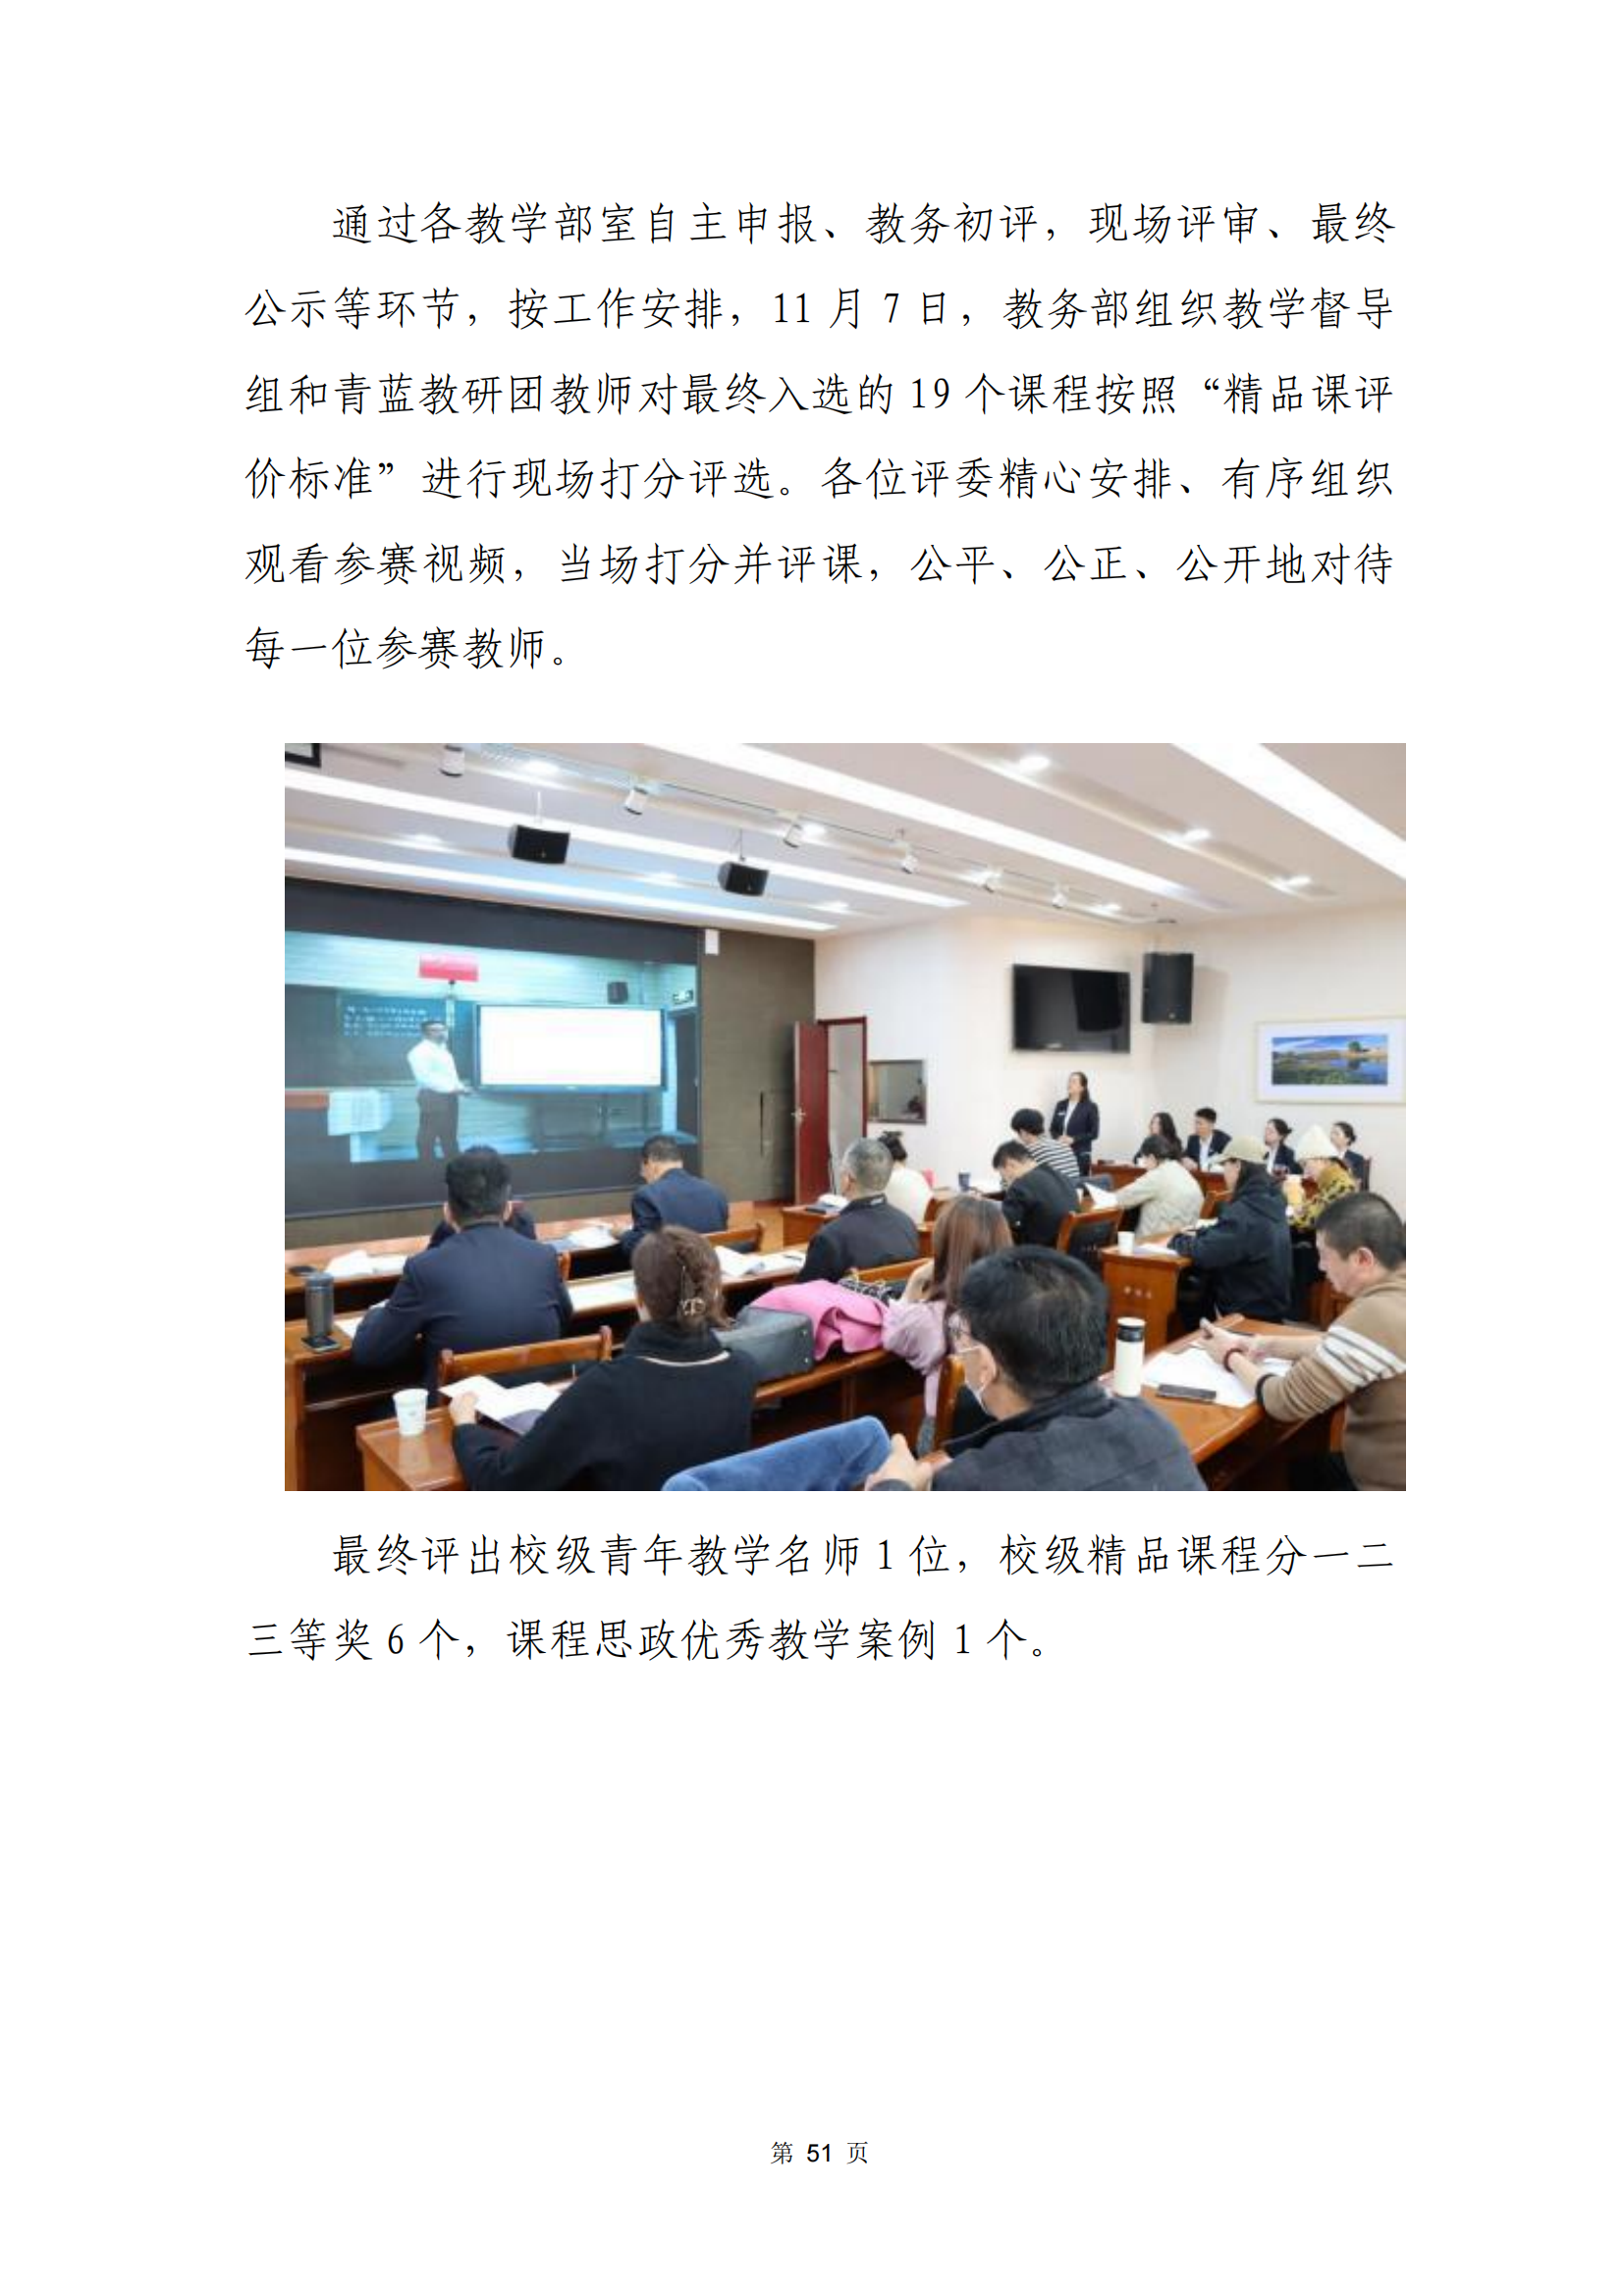 青海省文化艺术职业学校教育质量年报_58.png